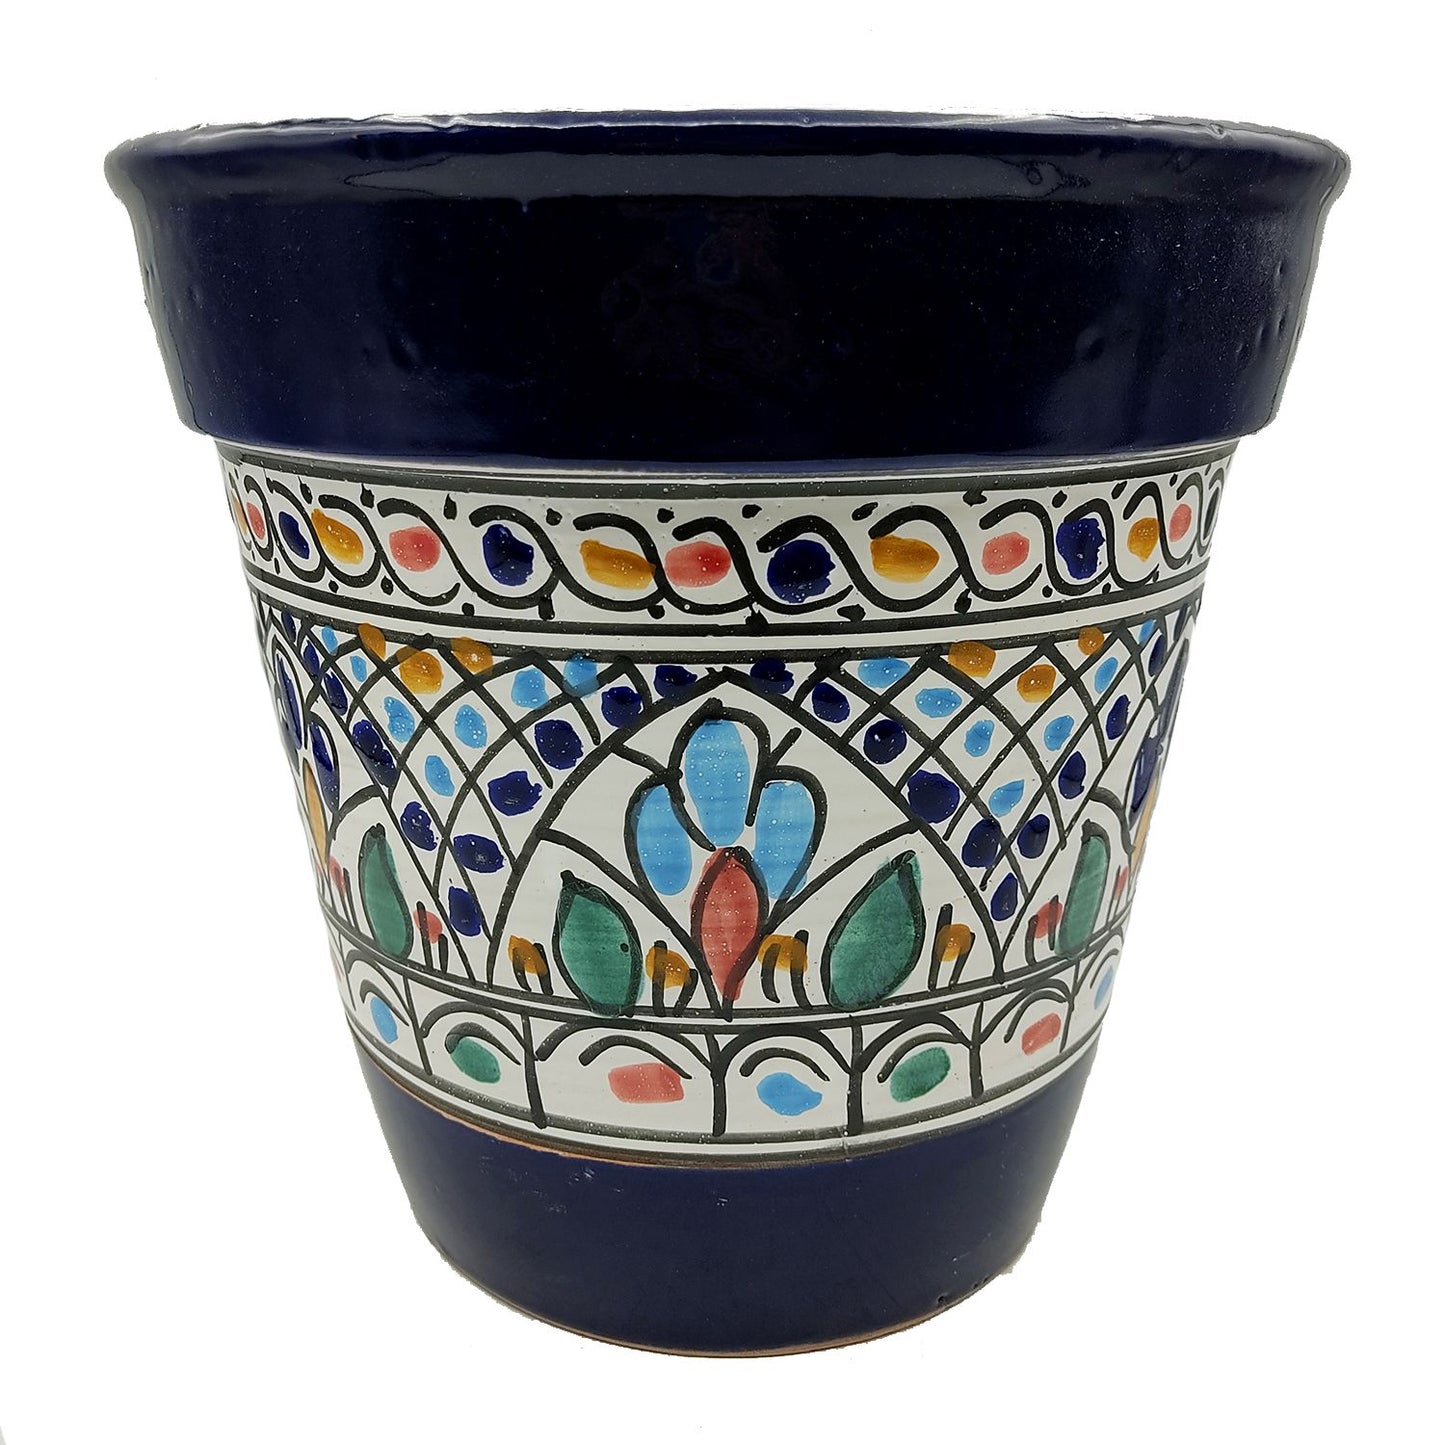 Vaso Terracotta Tunisino Marocchino Etnico Decoro Fioriera Ceramica 0411221027